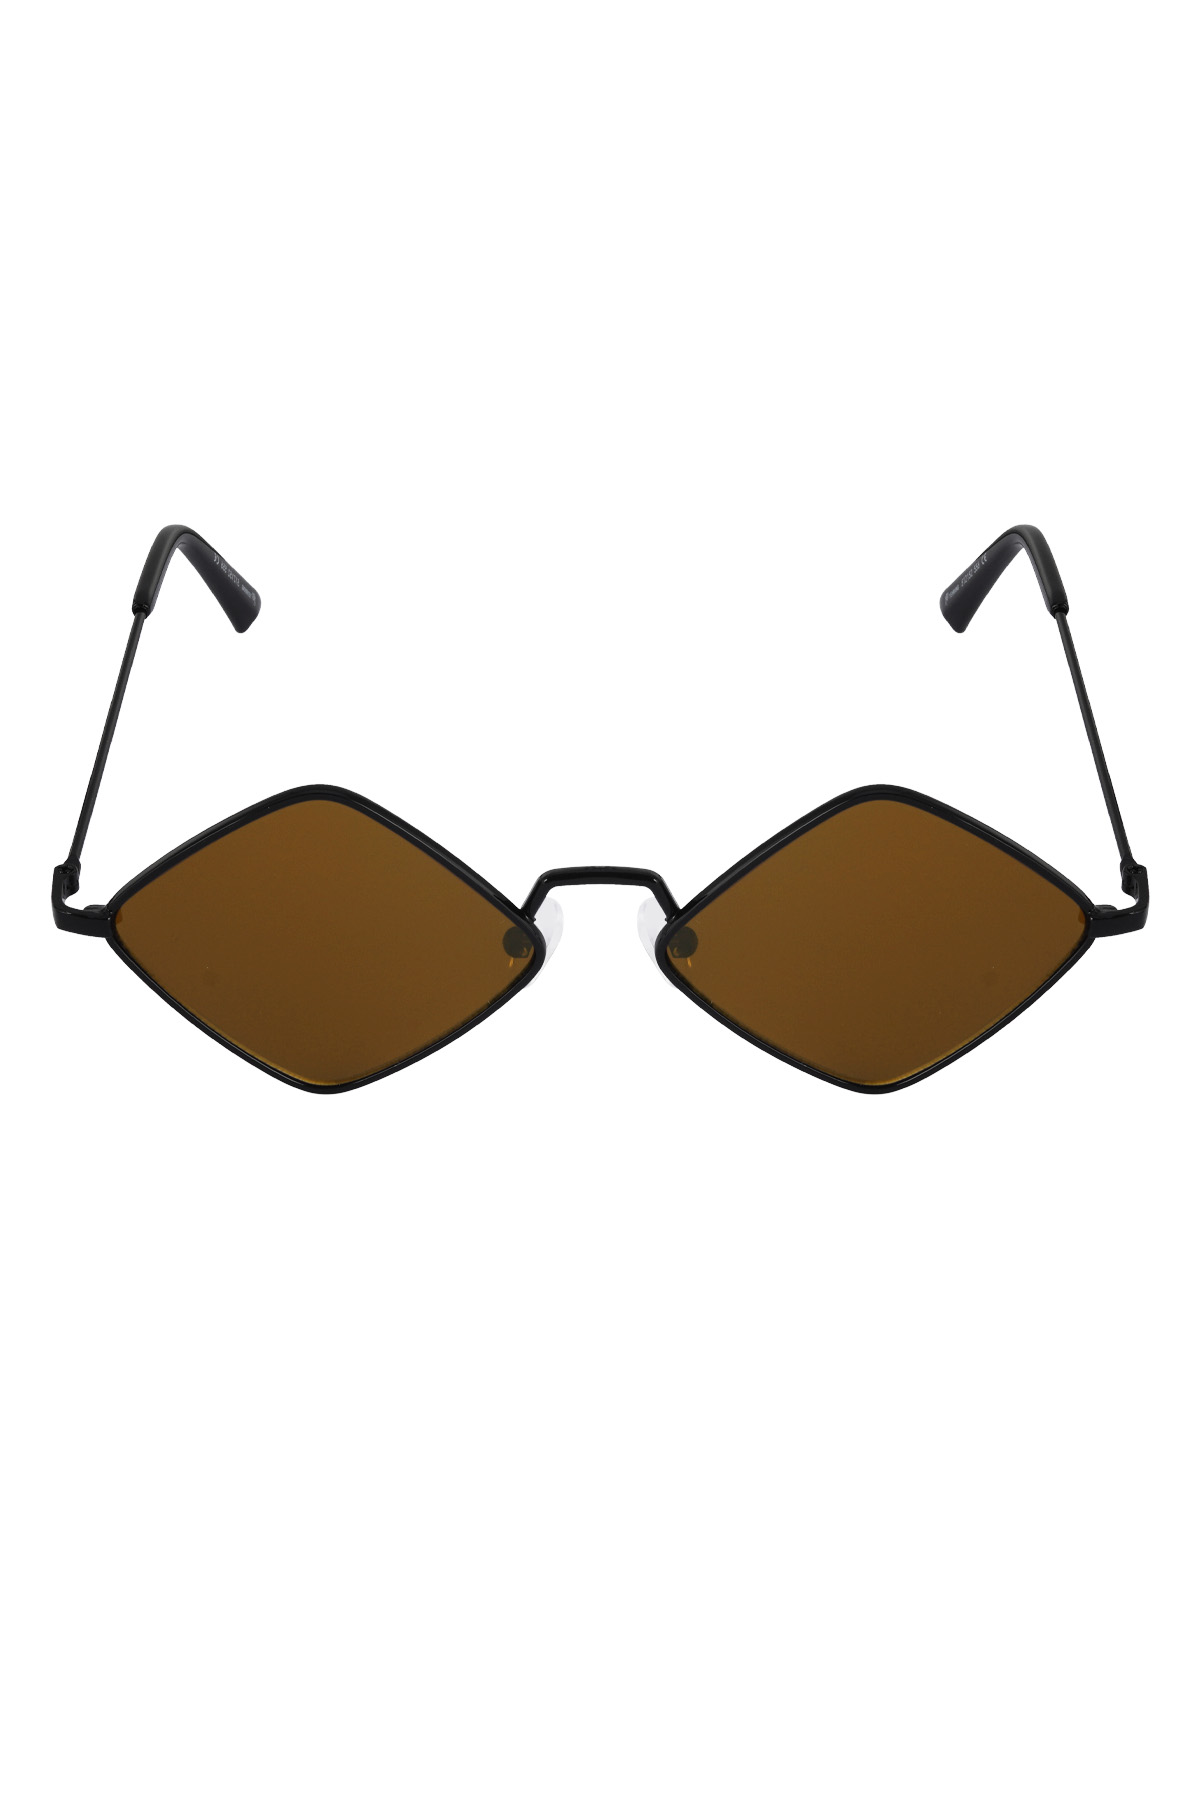 Sunglasses brillance - brown h5 Picture4